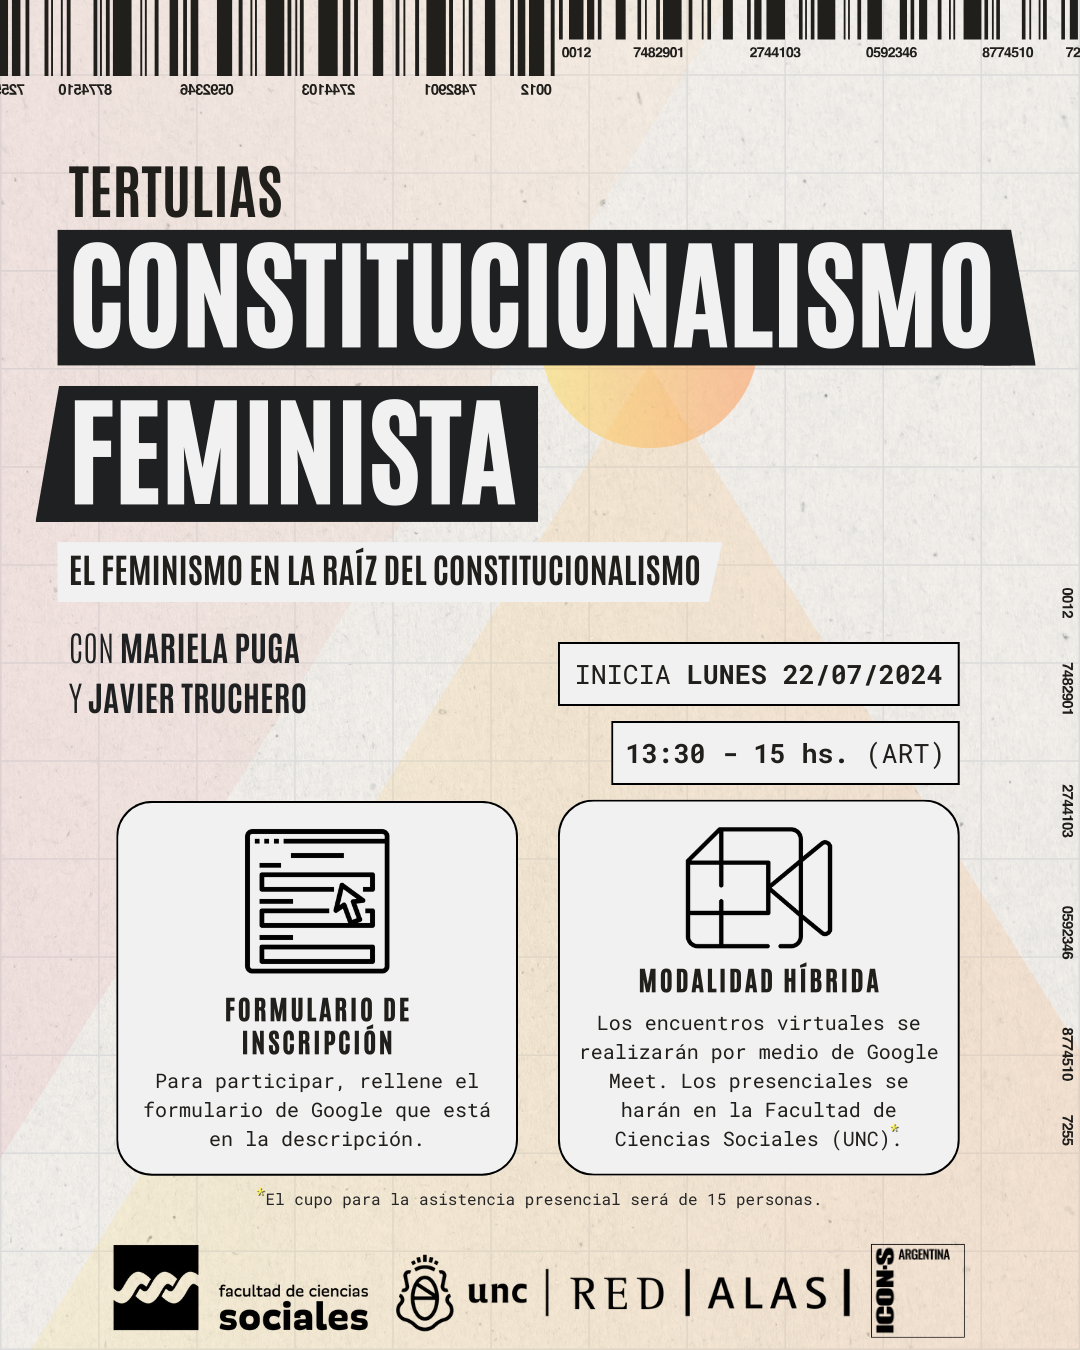 Tertulias: Constitucionalismo feminista. El feminismo en la raíz del constitucionalismo